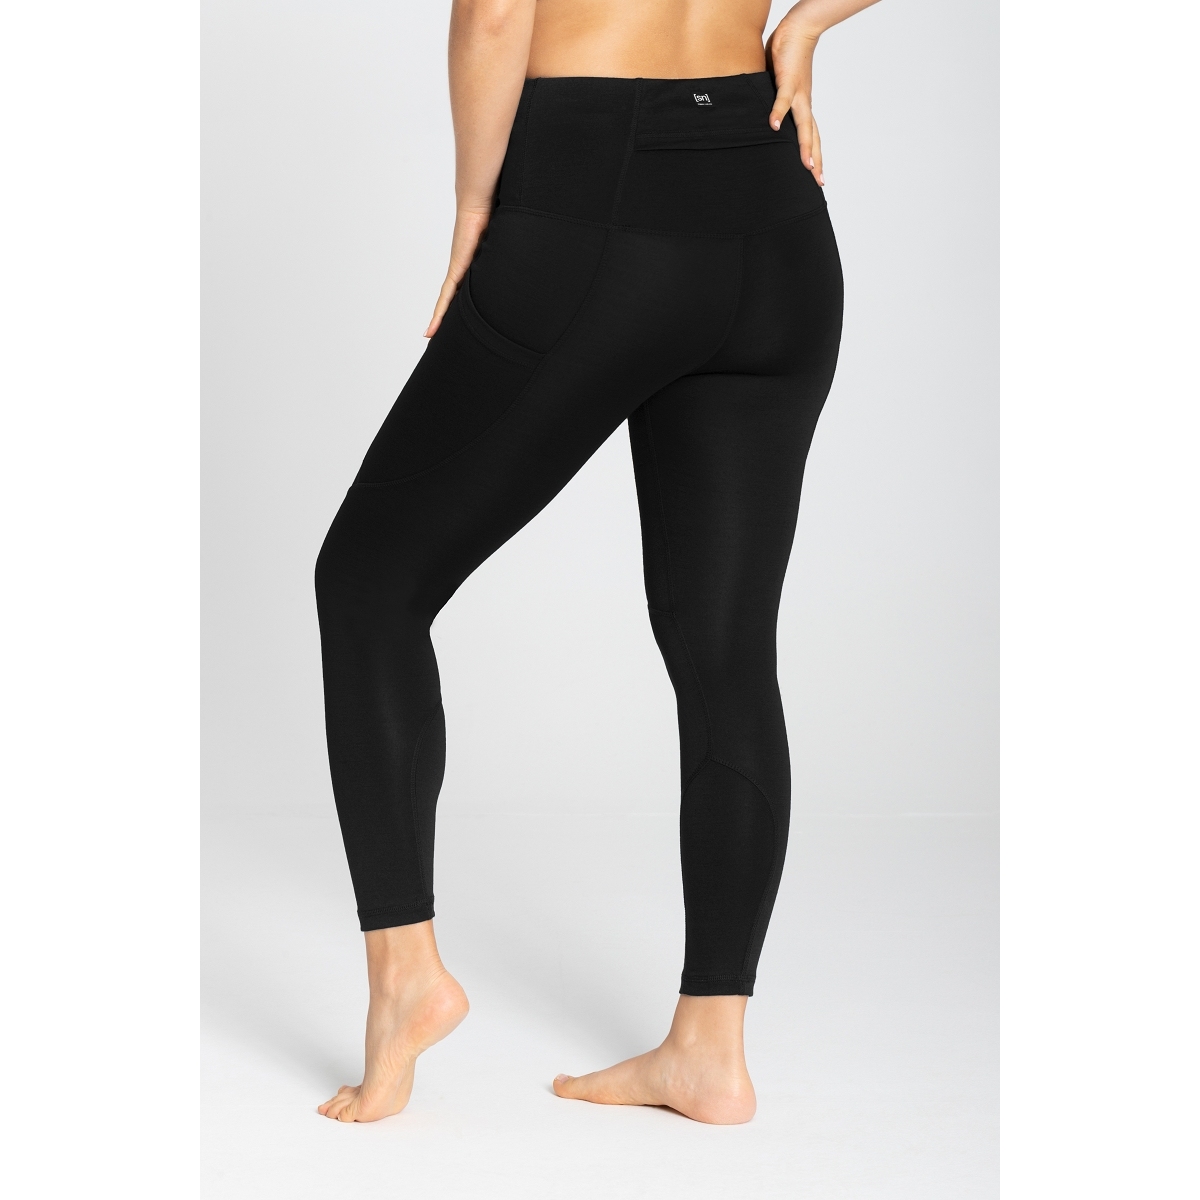 High Waist Jogger Leggings Pants for Women Ladies Plus Size Workout Clothes  Gym Fitness Yoga Activewear Stretch Pilates Pants Sweatpants - Walmart.com